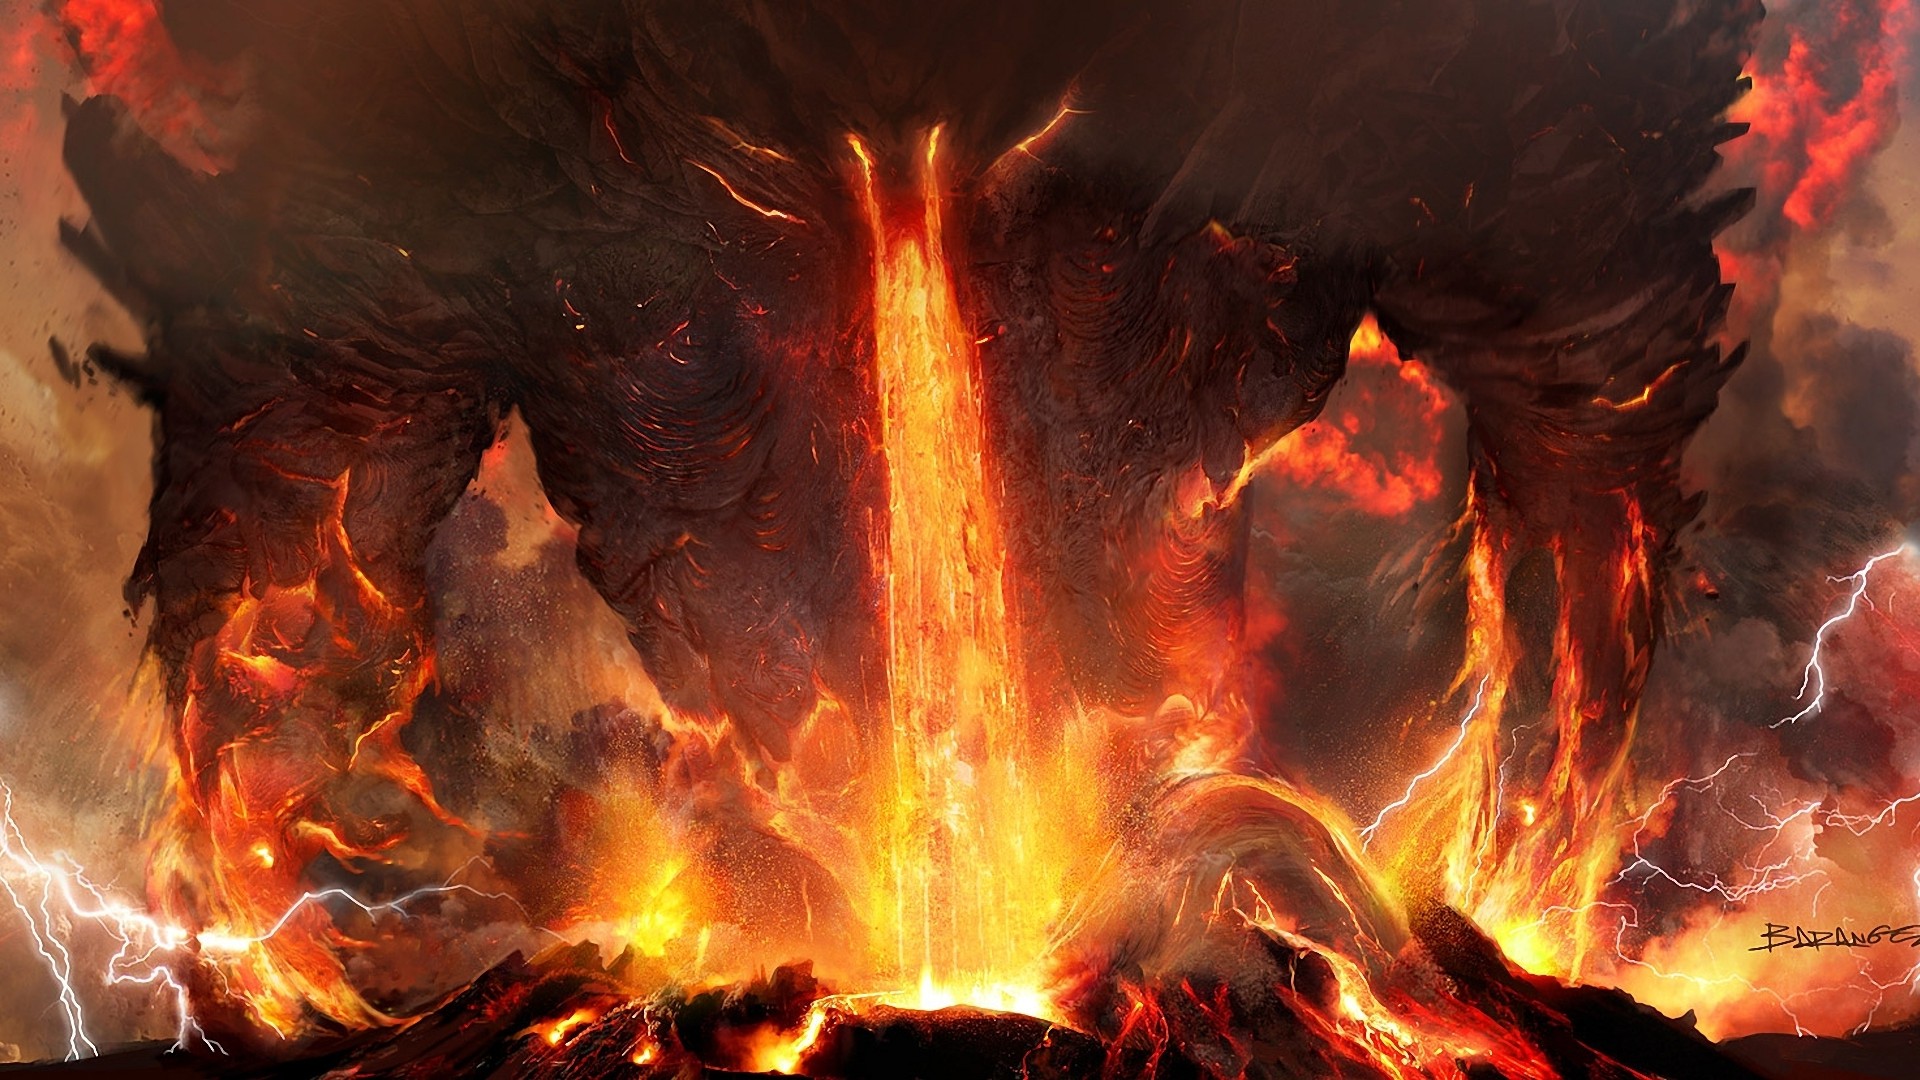 art, Titanium, Anger, Fire, Lightning, Lava, Volcano, Ash, Demon, Monster, Monsters Wallpaper HD / Desktop and Mobile Background